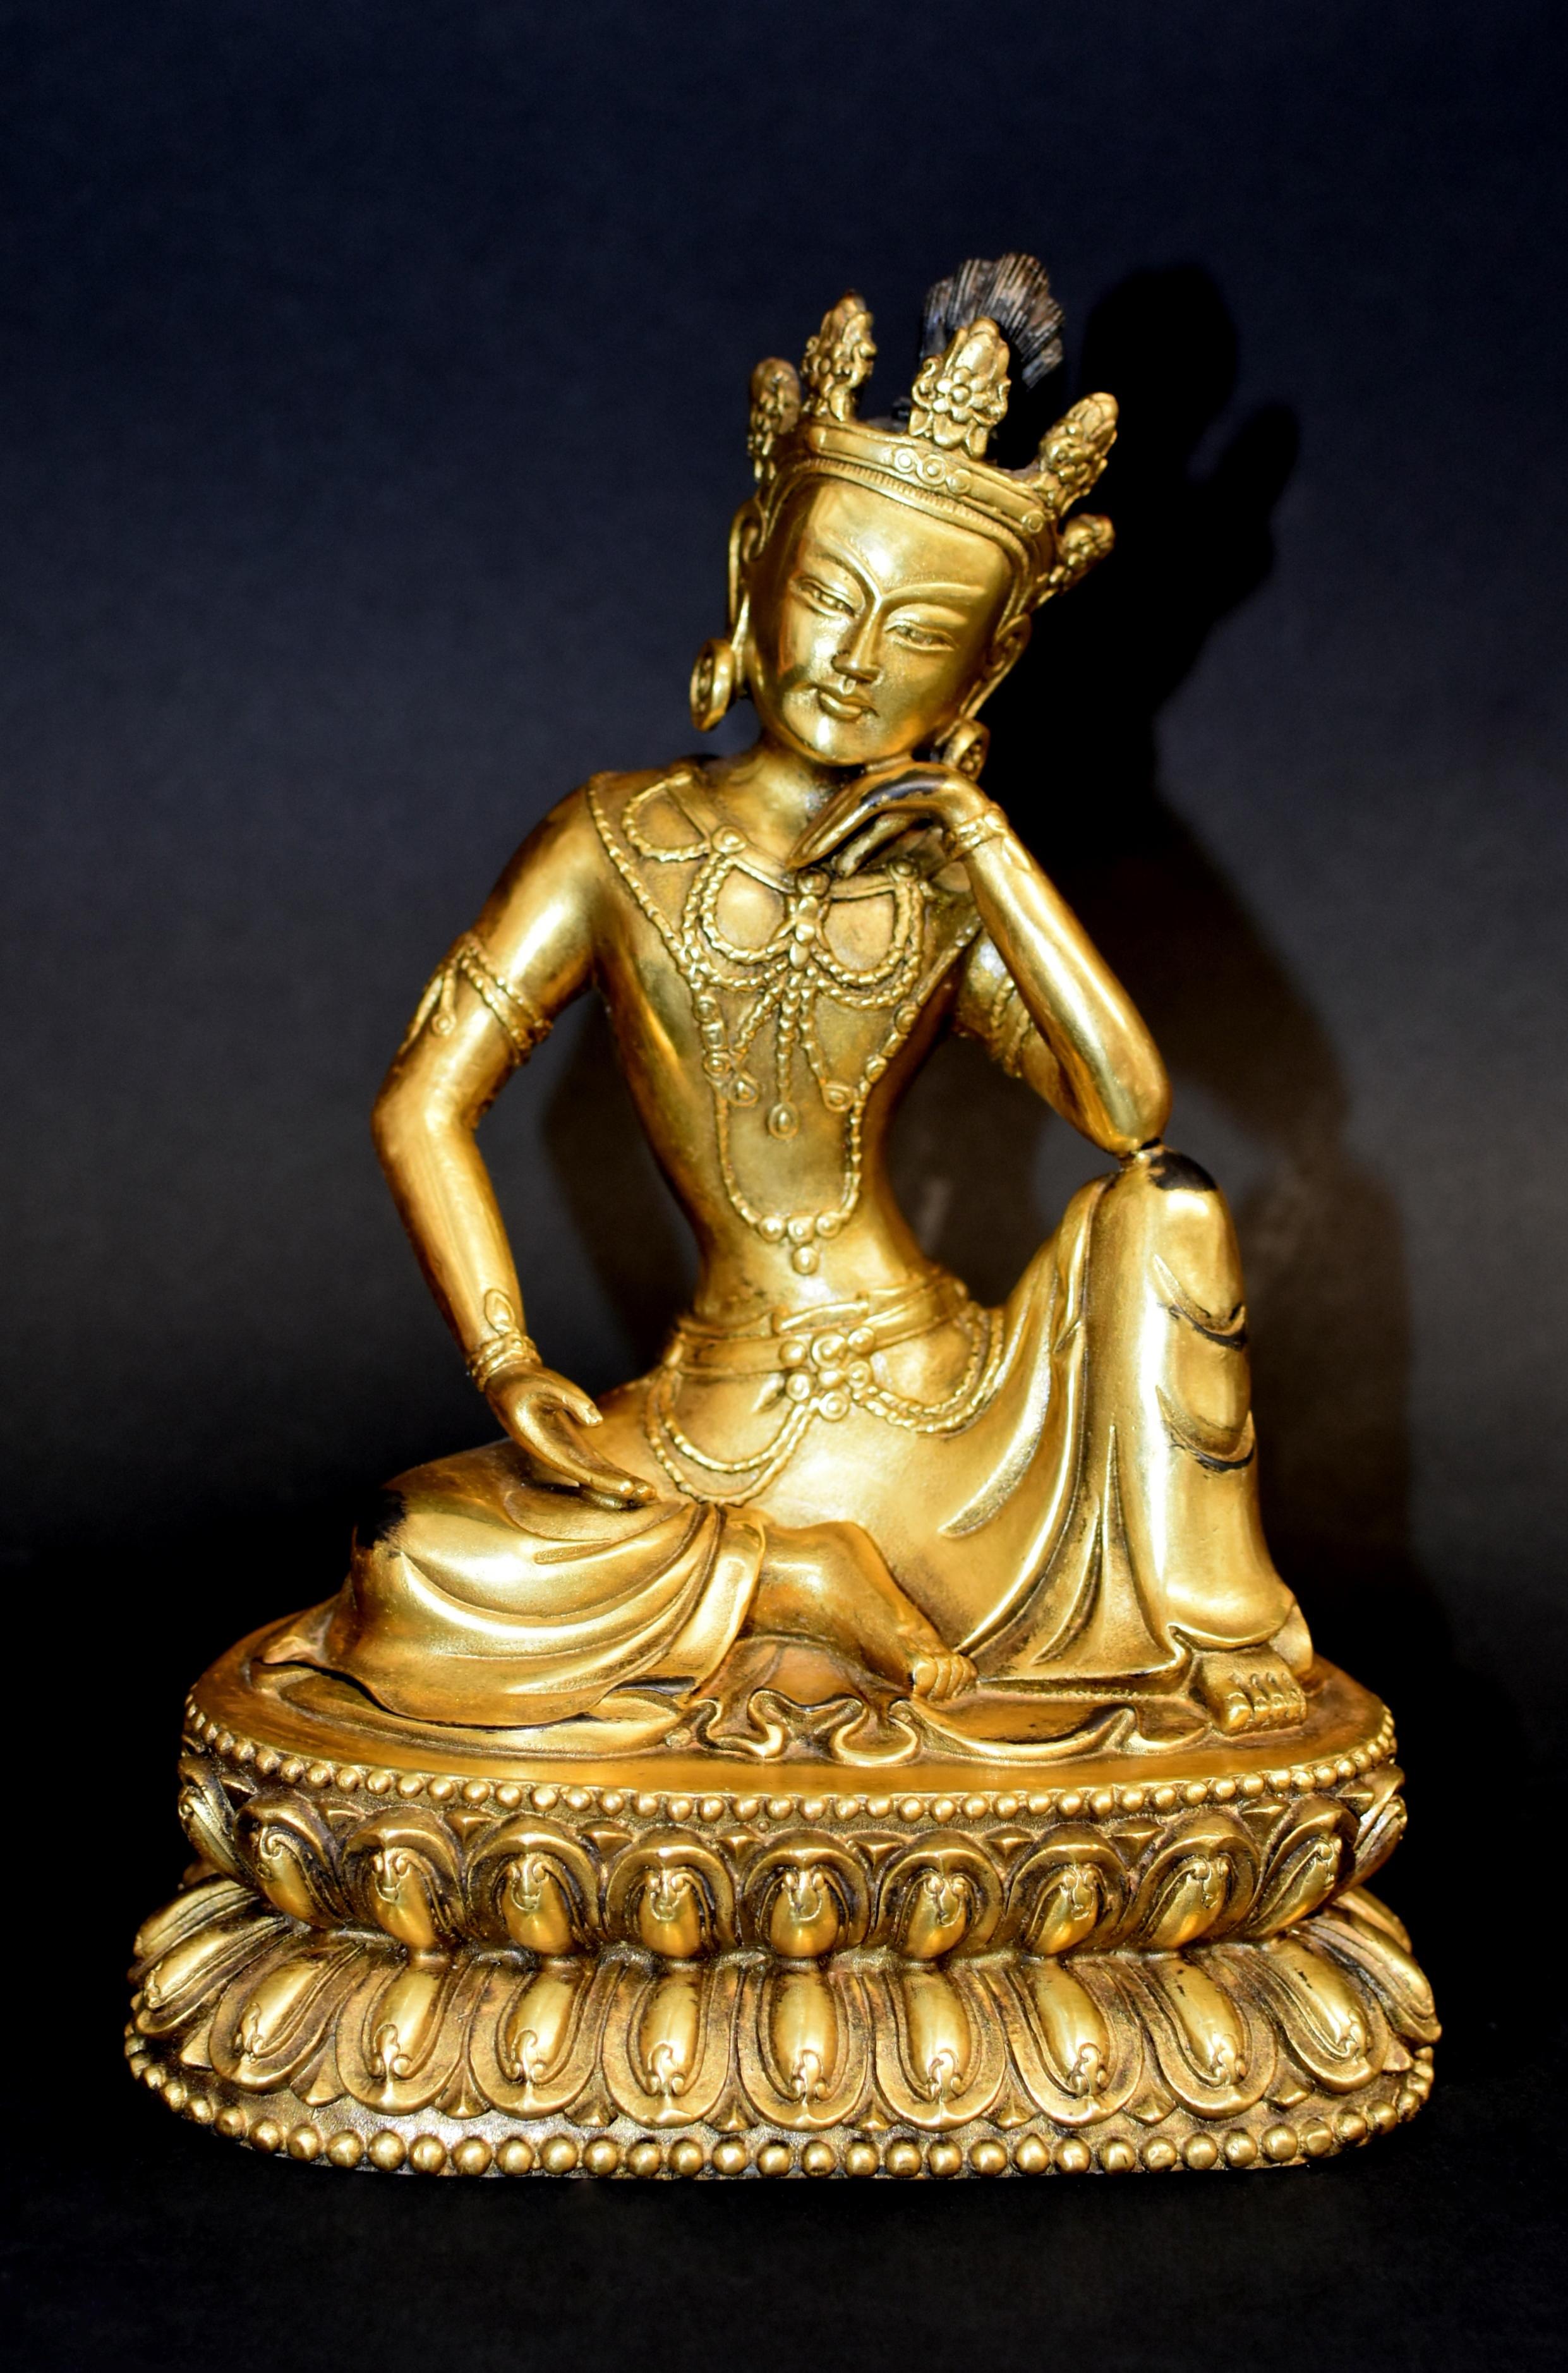 Eine prächtige vergoldete Bronzestatue des tibetischen Avalokiteshvara, des mitfühlenden Bodhisattva Wassermond Guan Yin. Die anmutige Figur sitzt in Rajalilasana, der 